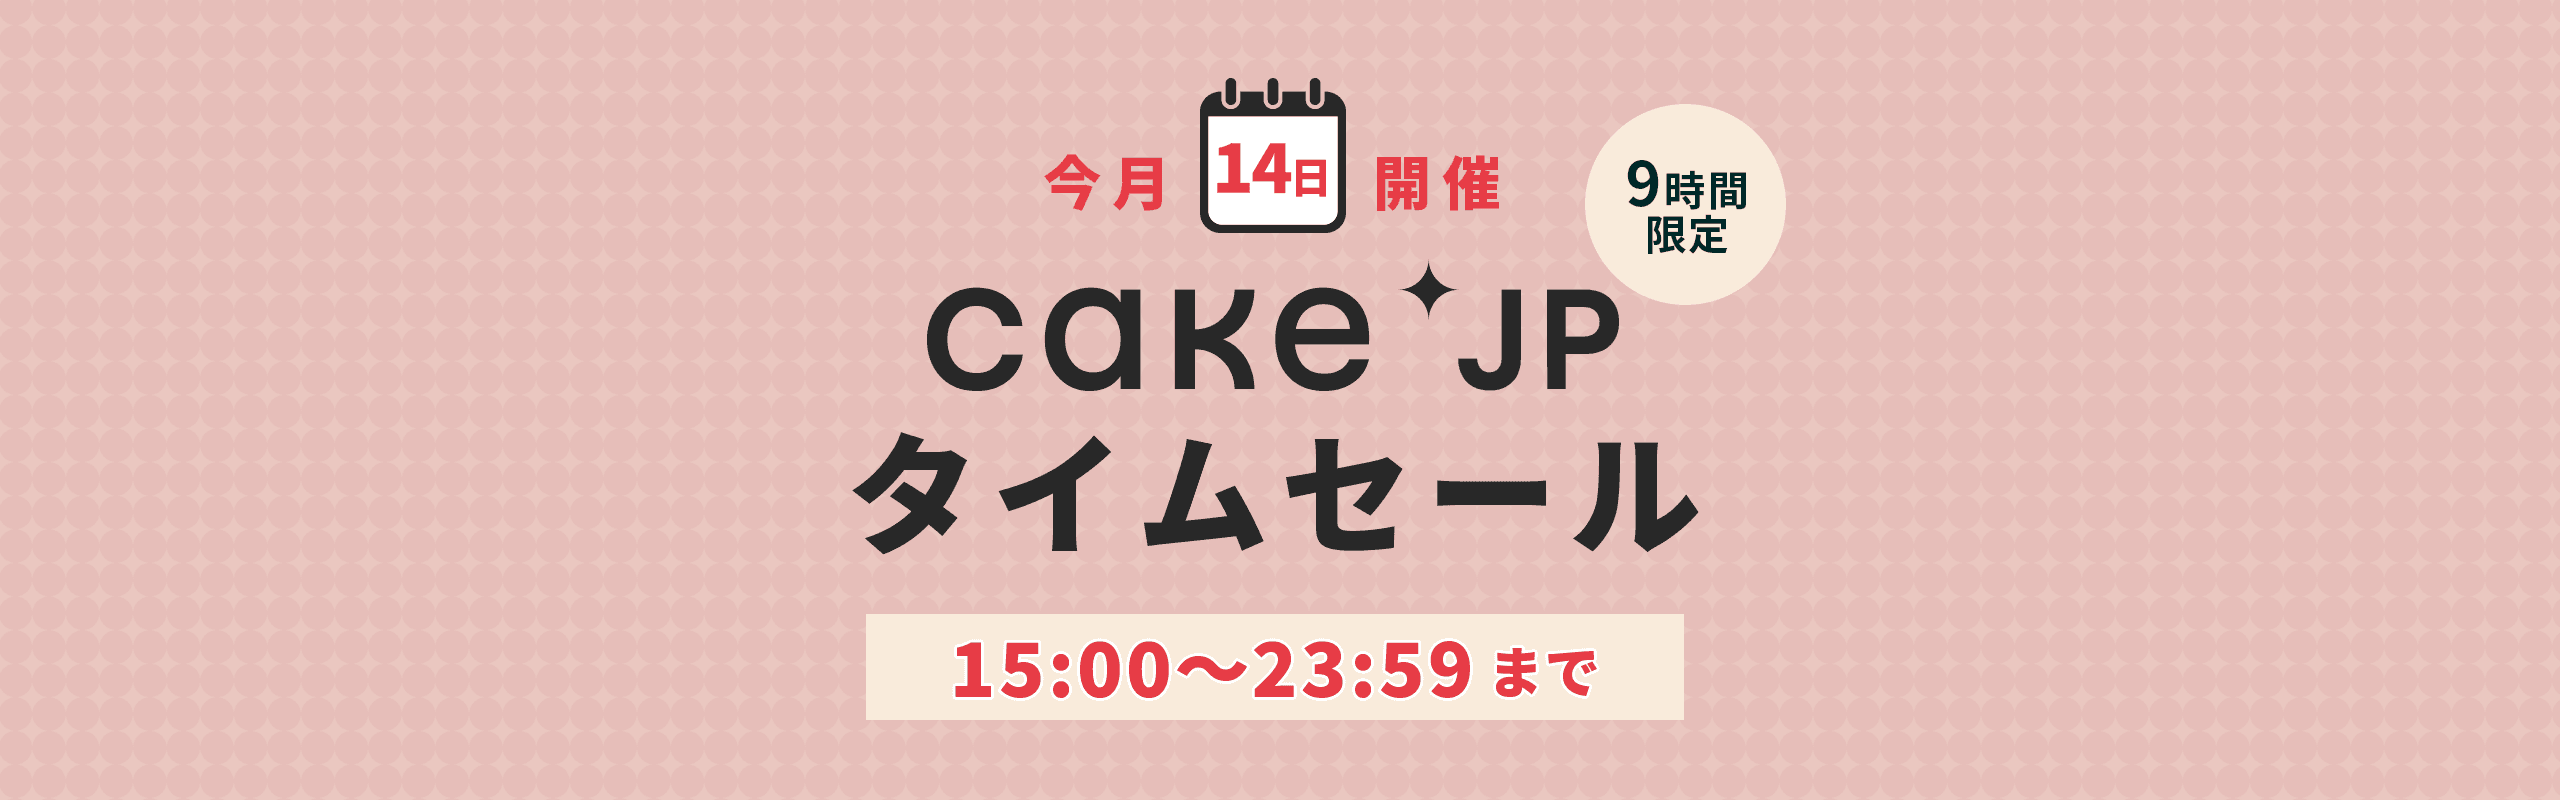 Cake.jpタイムセール